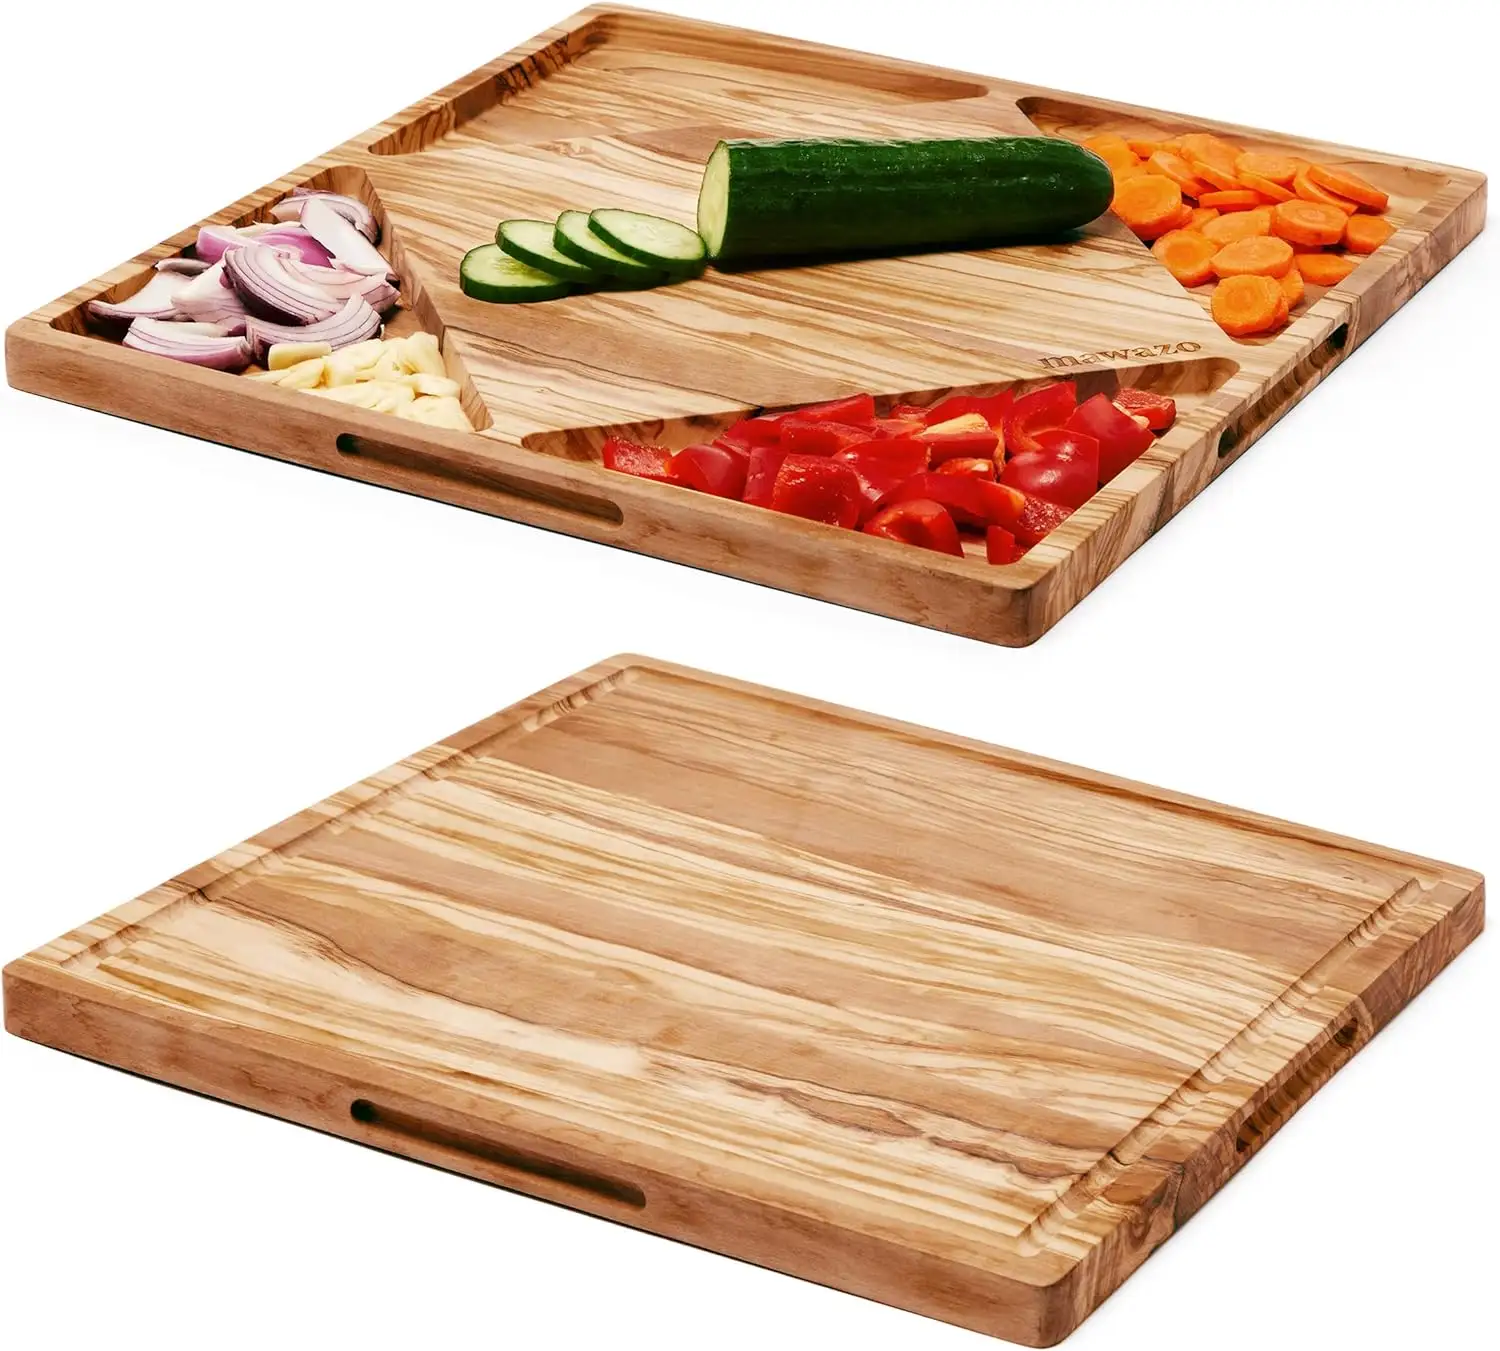 Grande planche à fromage en bois d'olivier de qualité supérieure, planche à découper réversible en bois avec récipients